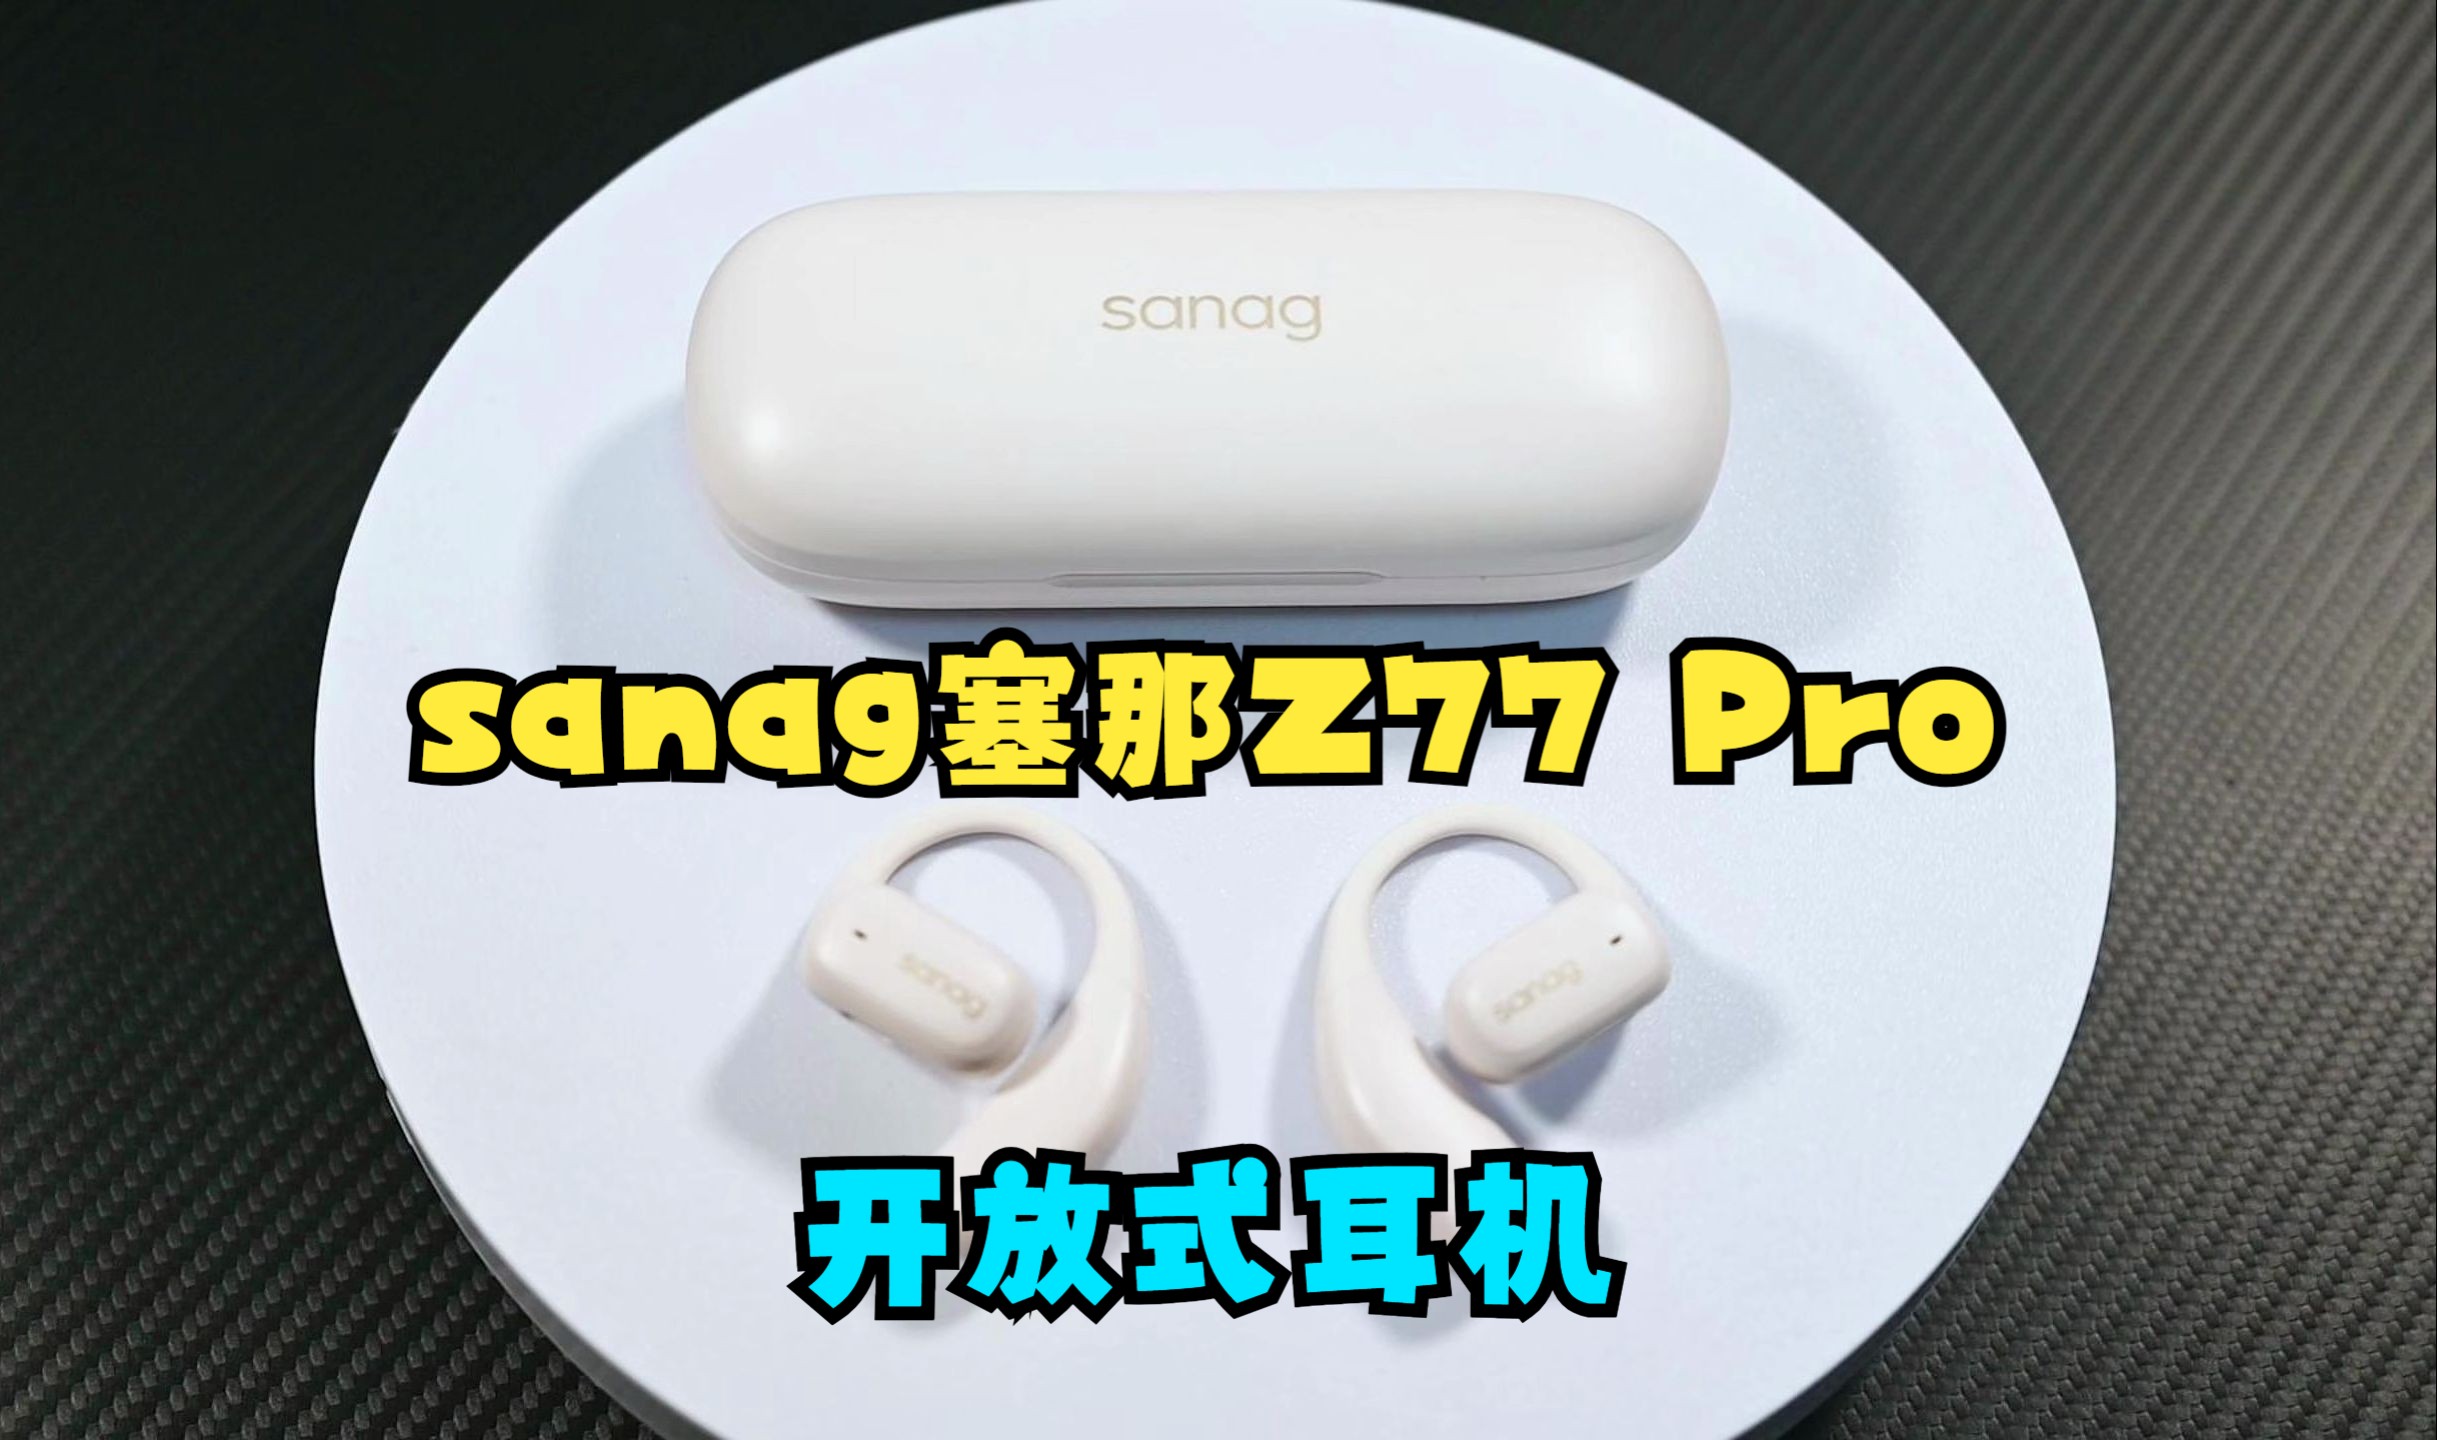 sanag塞那Z77 Pro：既是开放式耳机，更是AI耳机